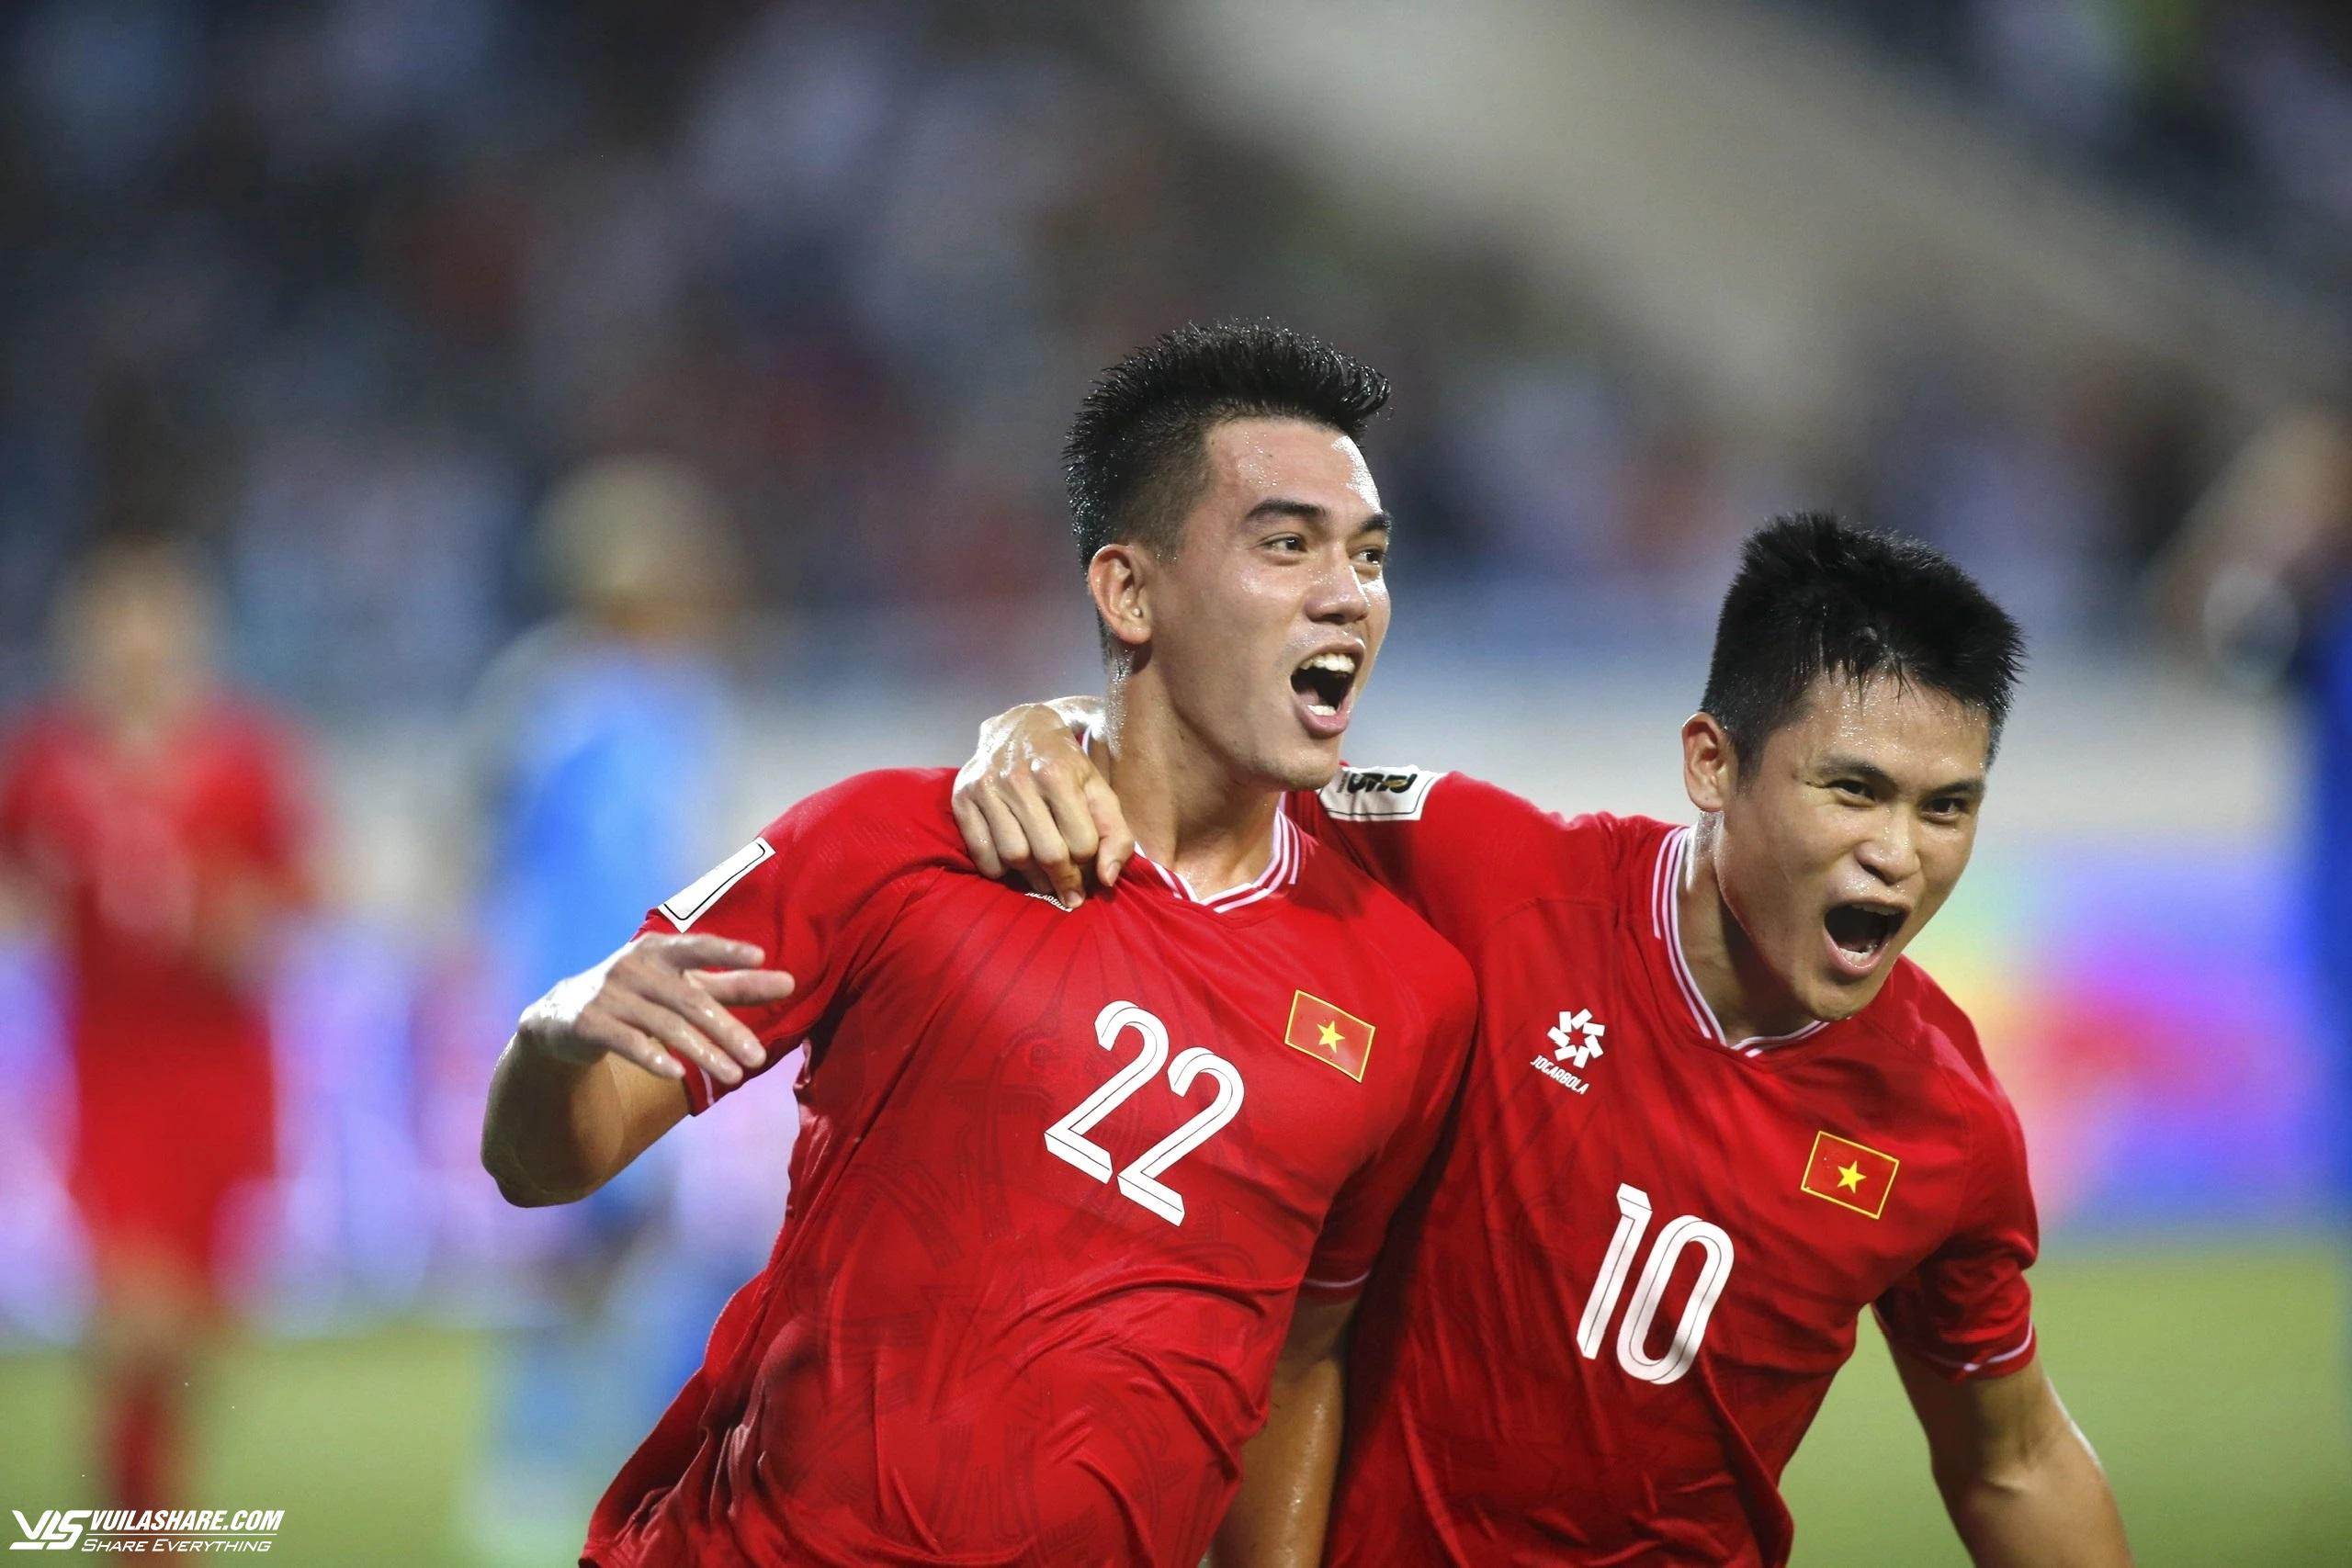 Nhiều người mong muốn tuyển Việt Nam sẽ đi tiếp vòng loại World Cup, bạn thì sao?- Ảnh 2.